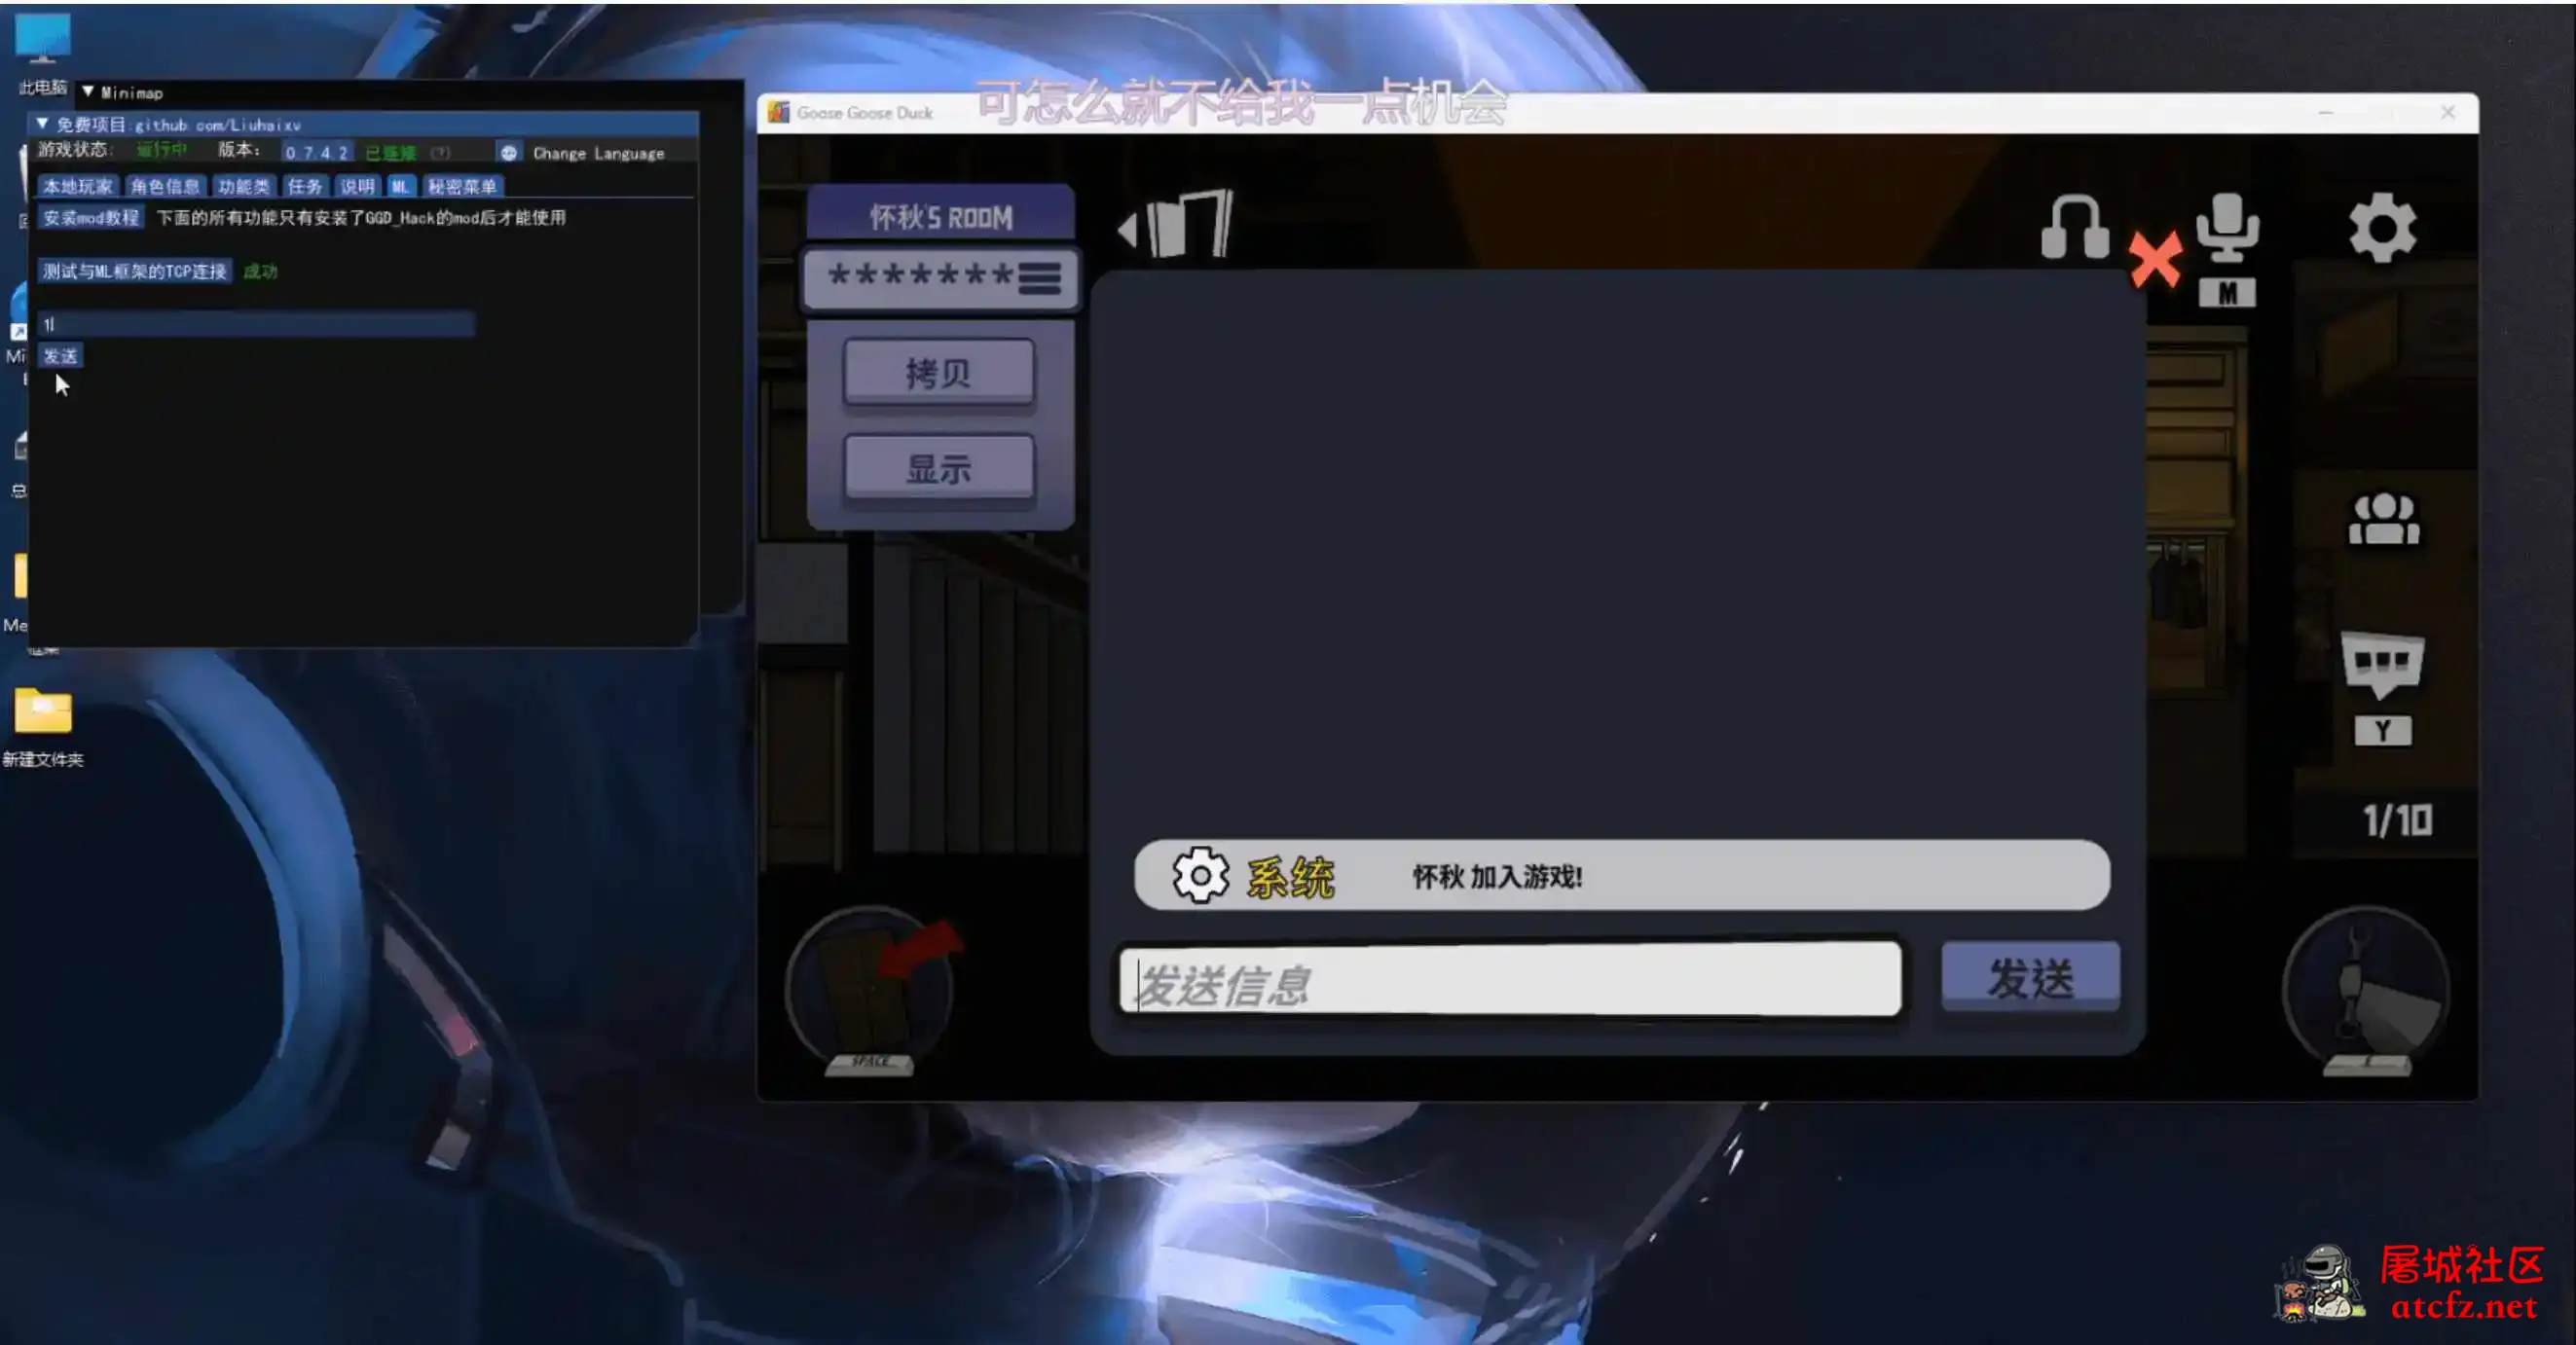 鹅鸭杀Minimp显玩家传送无冷却穿墙多功能辅助v1.5.1 屠城辅助网www.tcfz1.com4353